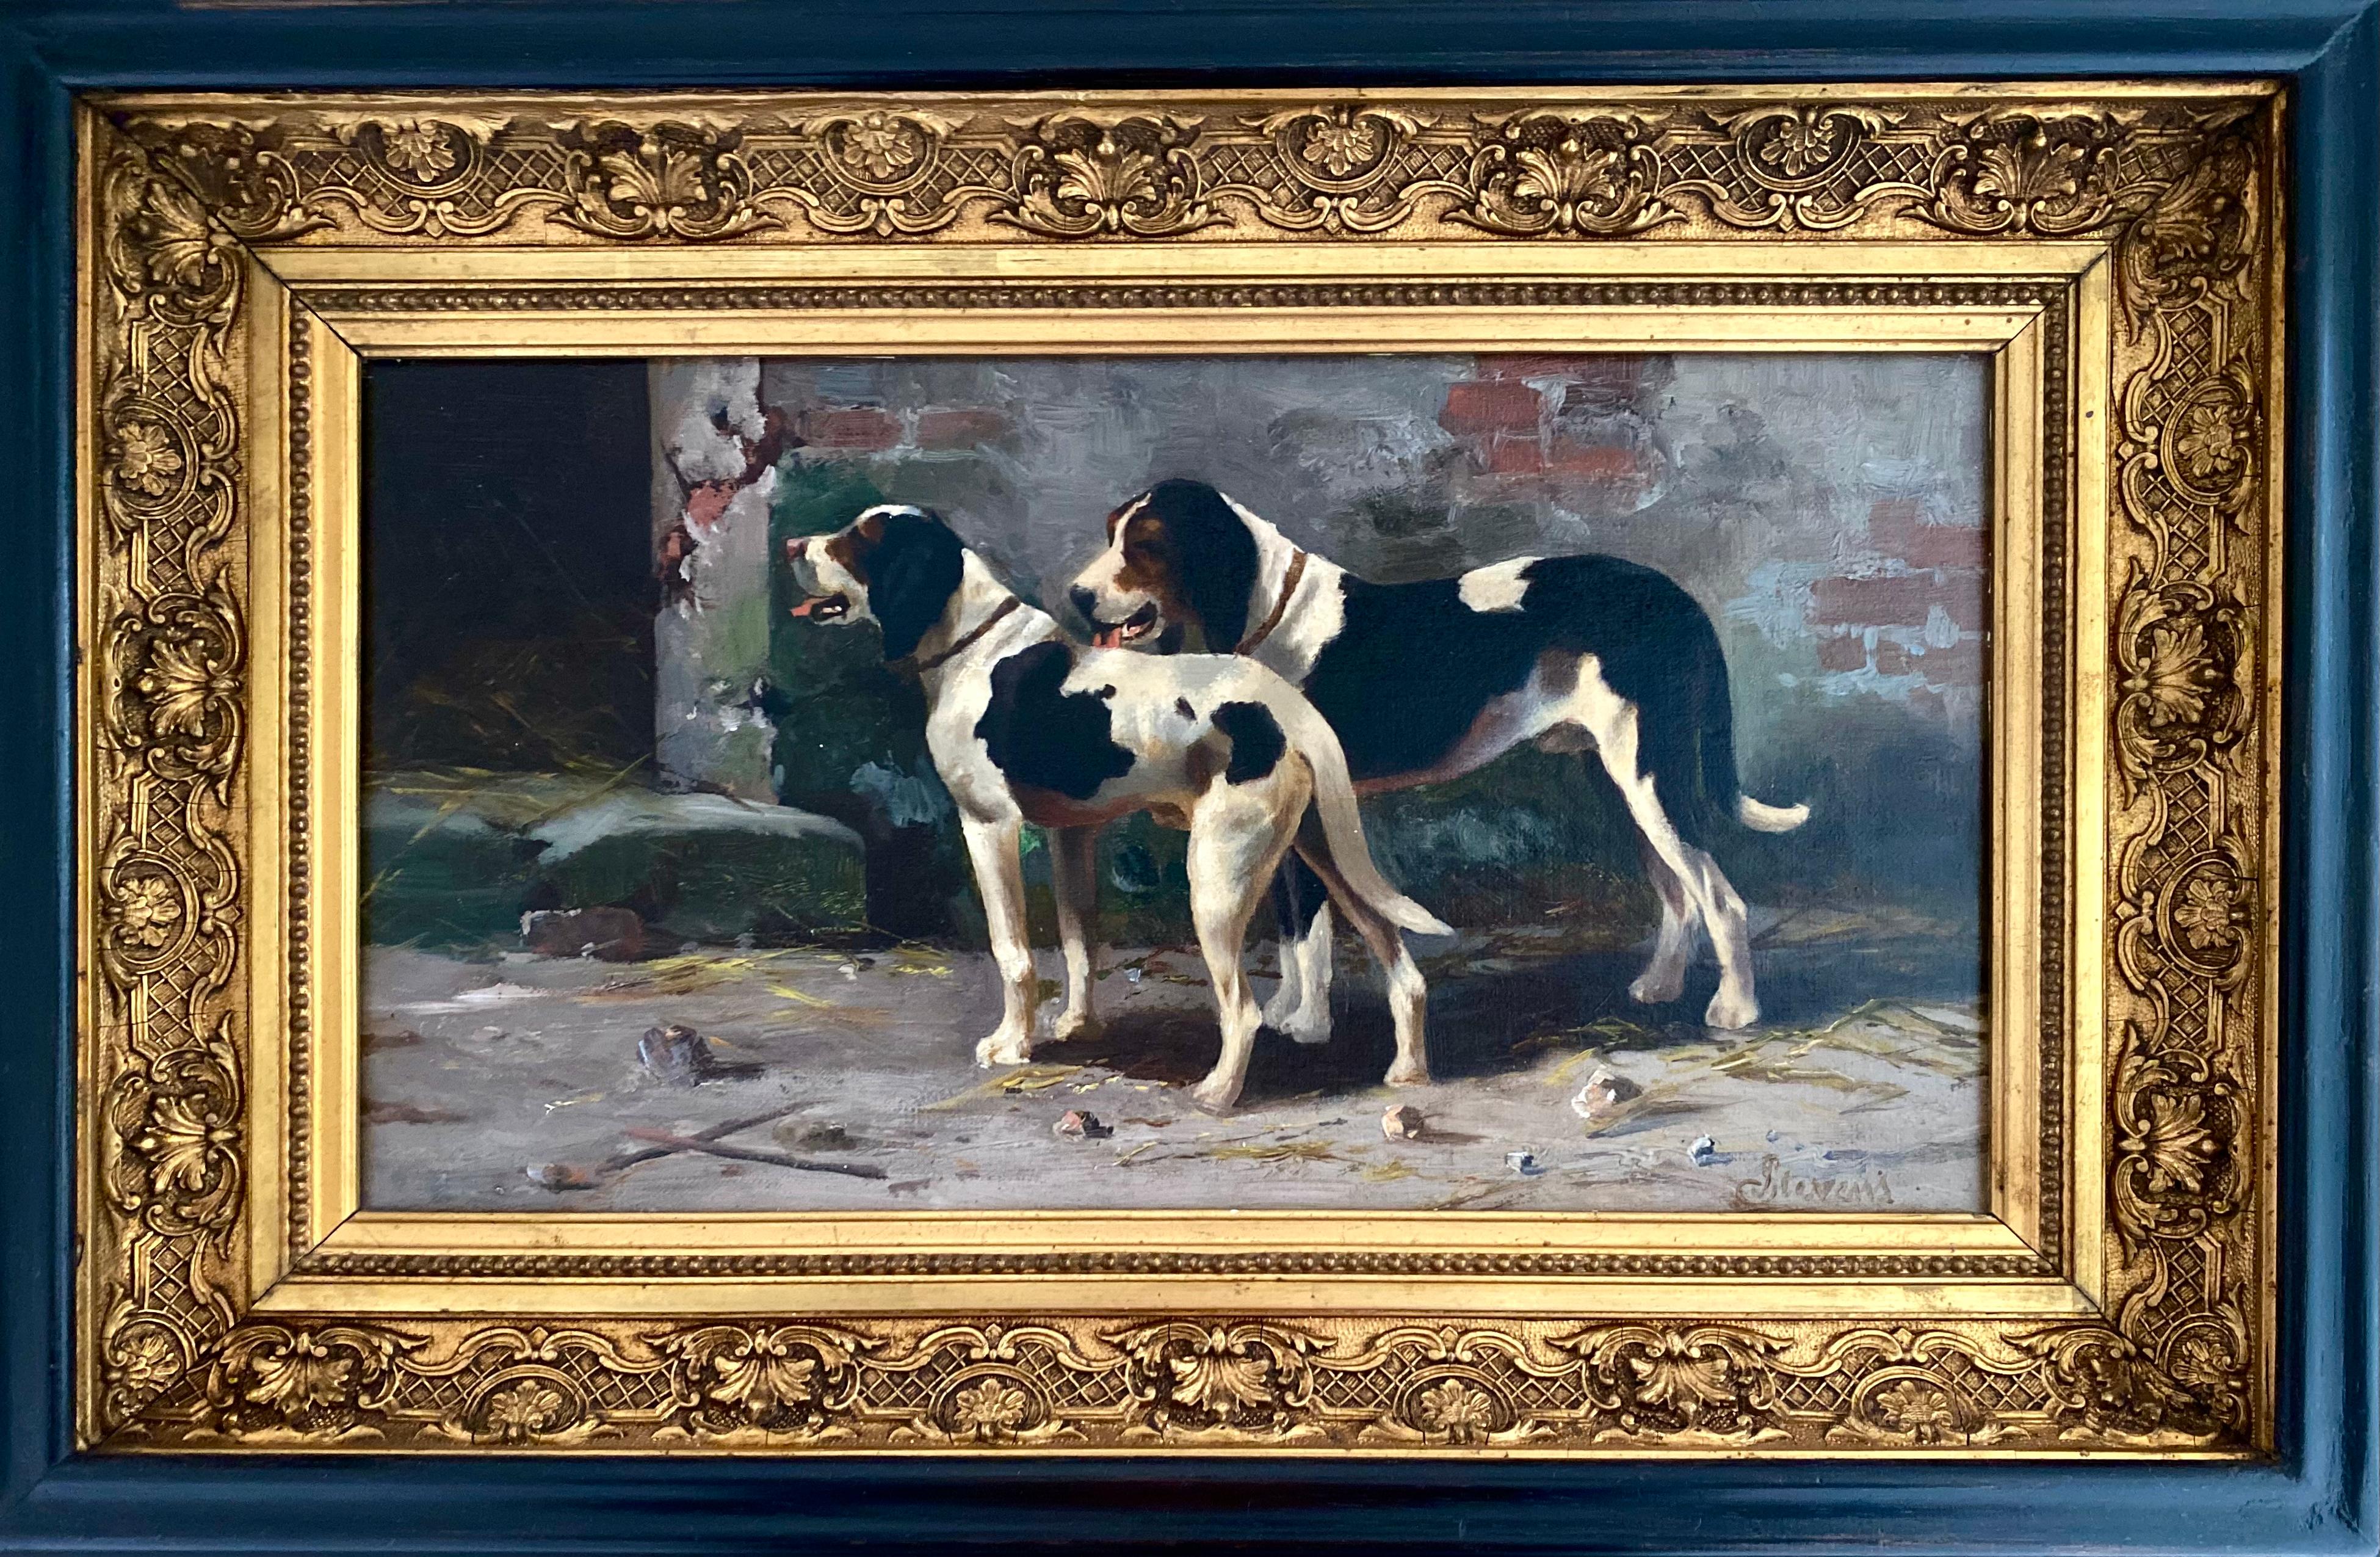 Stevens Joseph
Bruxelles 1816 - 1892
Peintre belge

Deux chiens de chasse
Signature : Signé en bas à droite
Médium : Huile sur toile
Dimensions : Taille de l'image 22,50 x 41,50 cm, taille du cadre 35 x 54 cm

Biographie : Joseph Édouard Stevens est